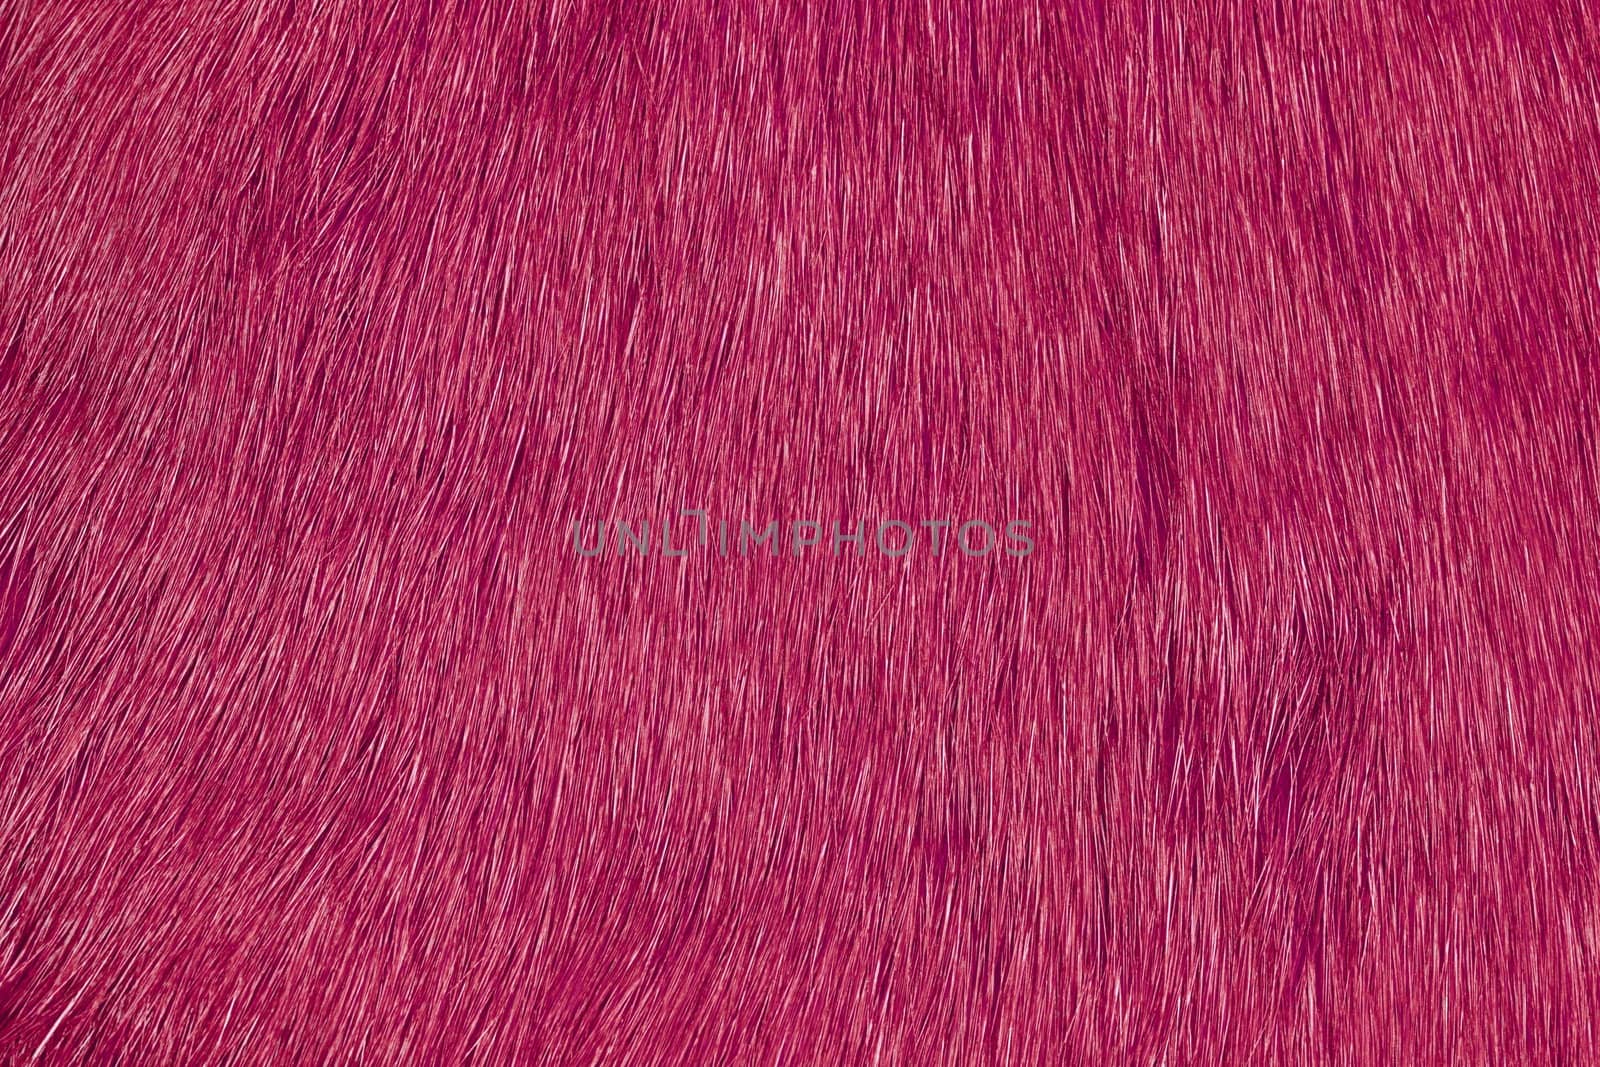 Pink fur by Onigiristudio